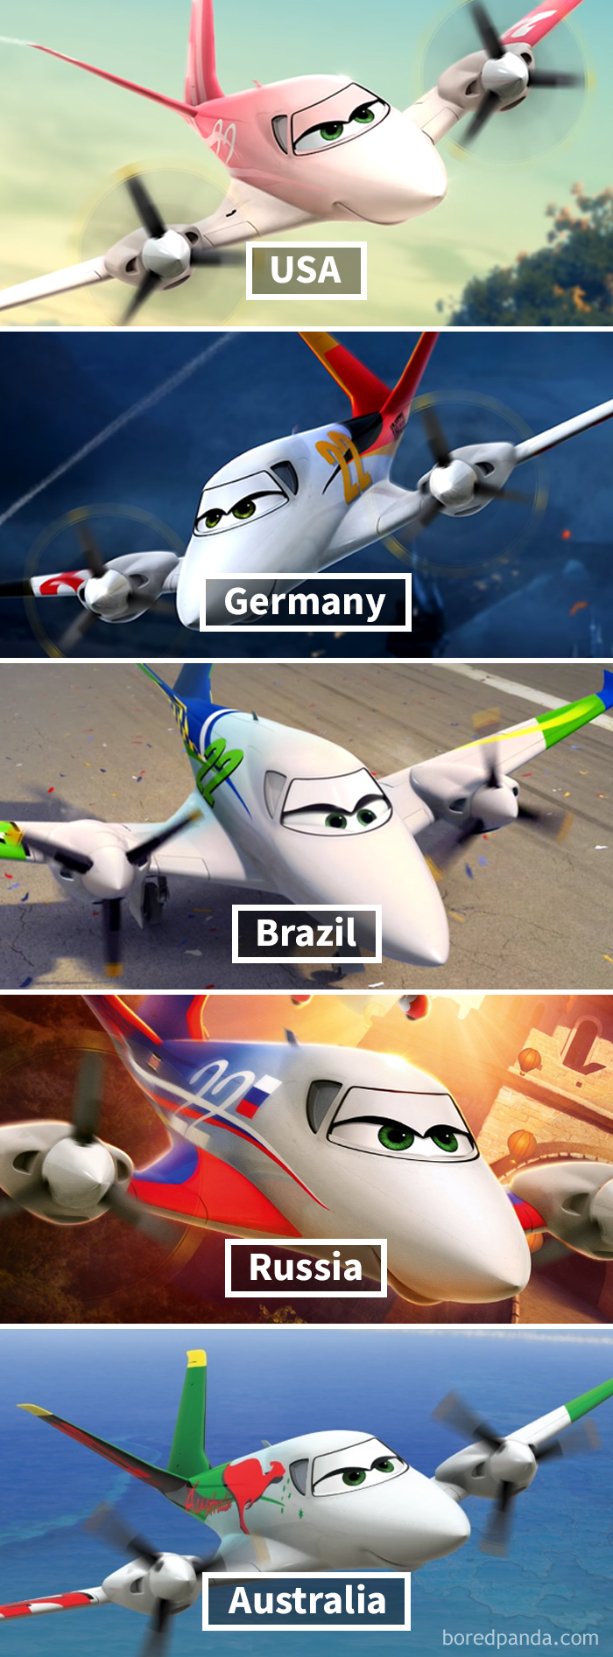 Những lần phim hoạt hình Disney và Pixar phải biến tấu để xuất hiện phù hợp tại các quốc gia trên thế giới - Ảnh 8.